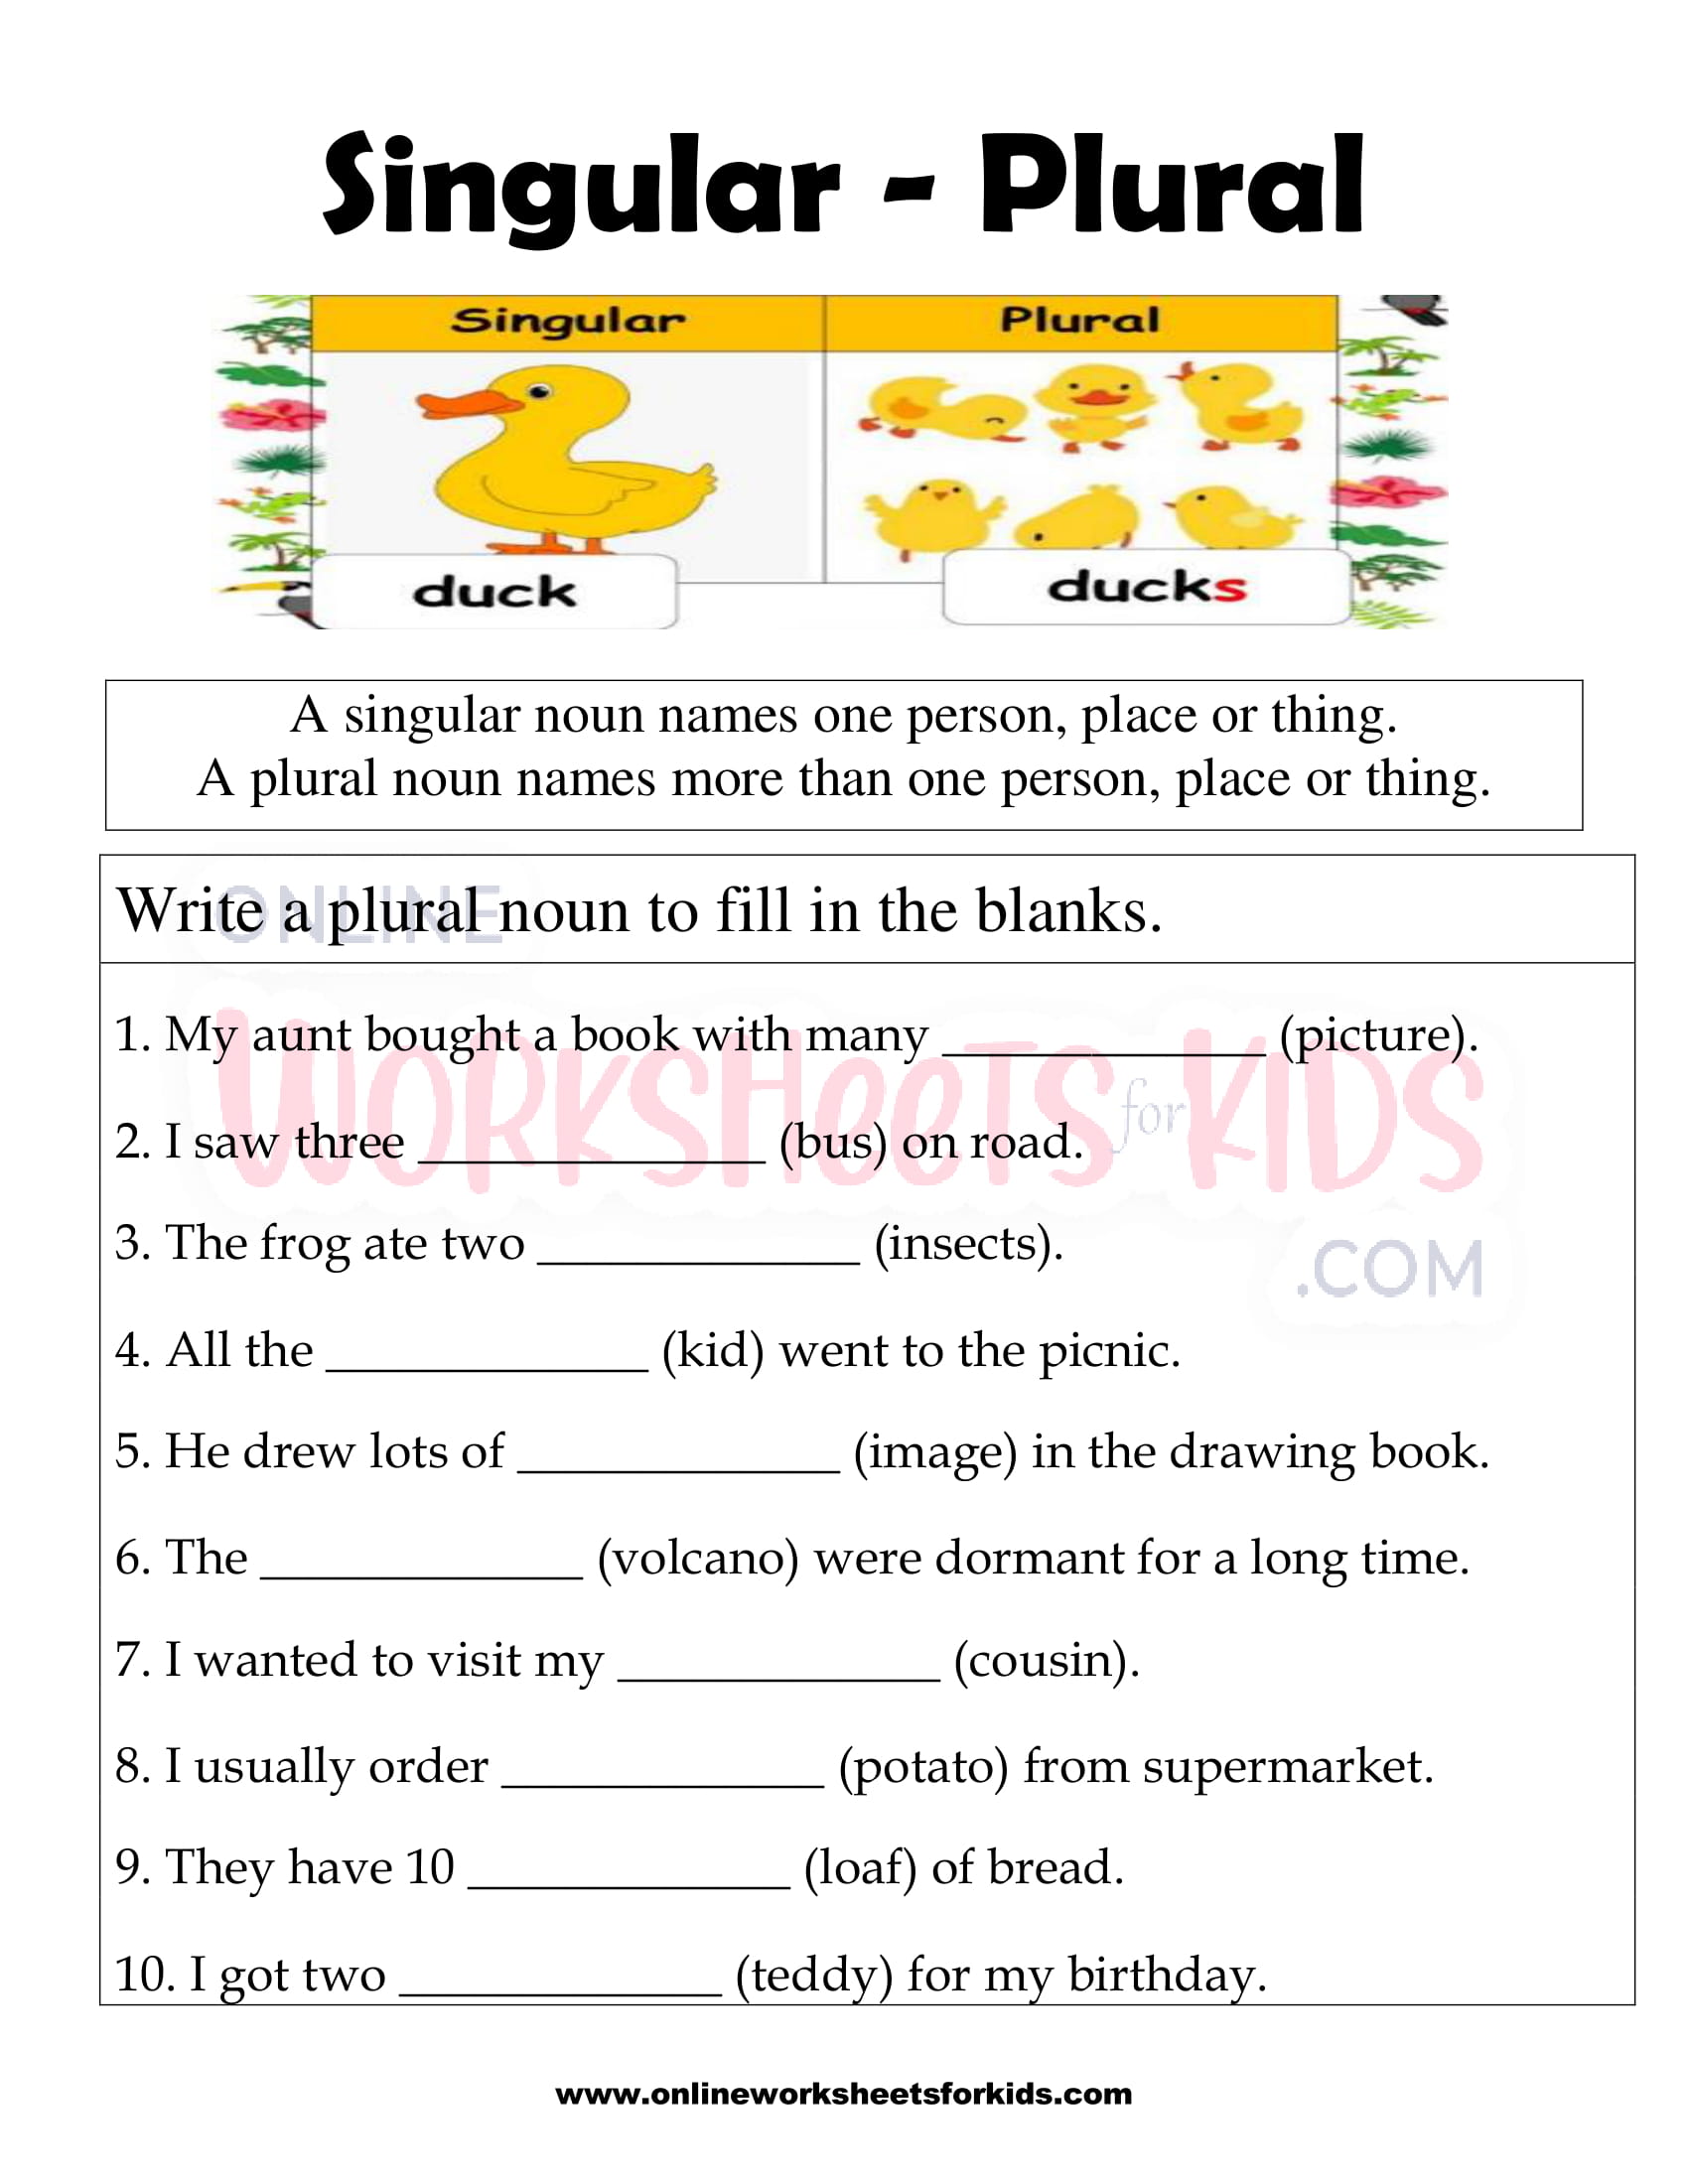 singular-and-plural-nouns-worksheet